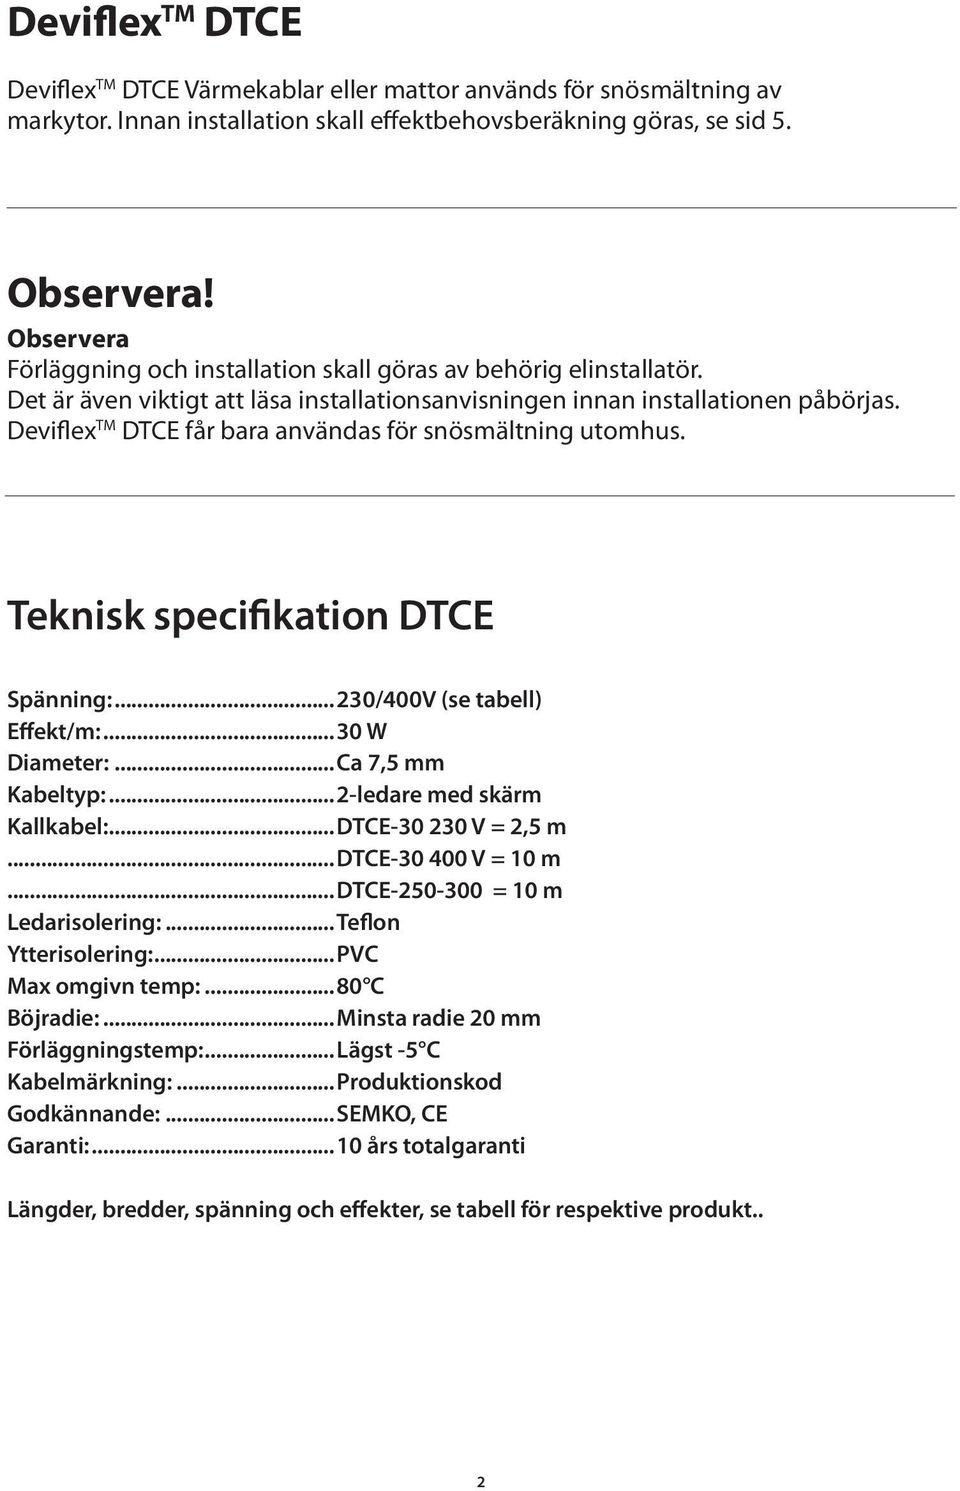 Deviflex TM DTCE får bara användas för snösmältning utomhus. Teknisk specifikation DTCE Spänning:...230/400V (se tabell) Effekt/m:...30 W Diameter:...Ca 7,5 mm Kabeltyp:...2-ledare med skärm Kallkabel:.